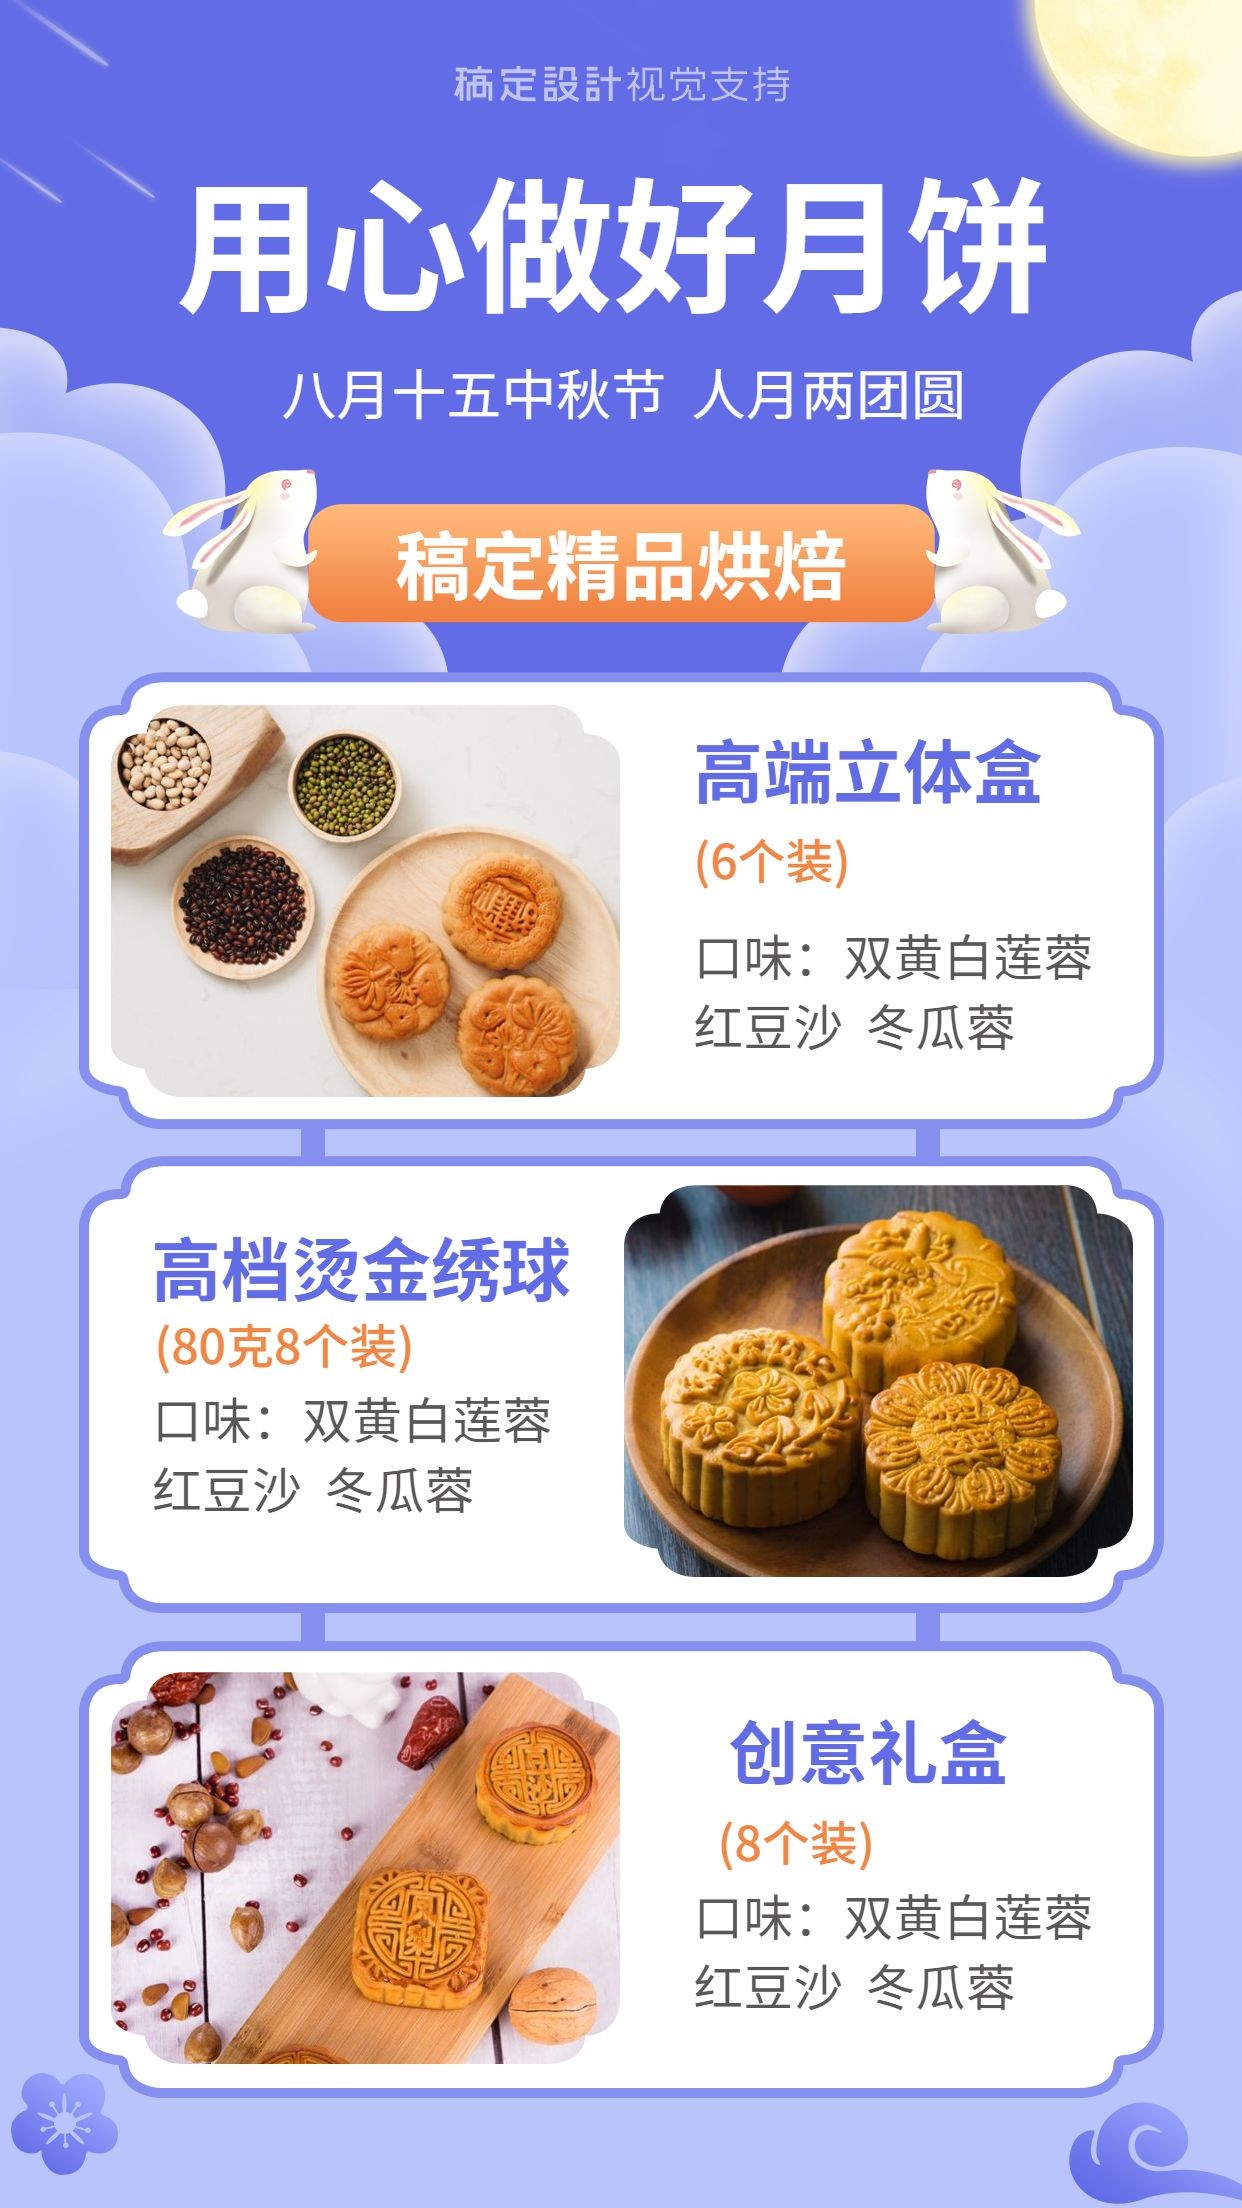 中秋节月饼拼图展示海报预览效果